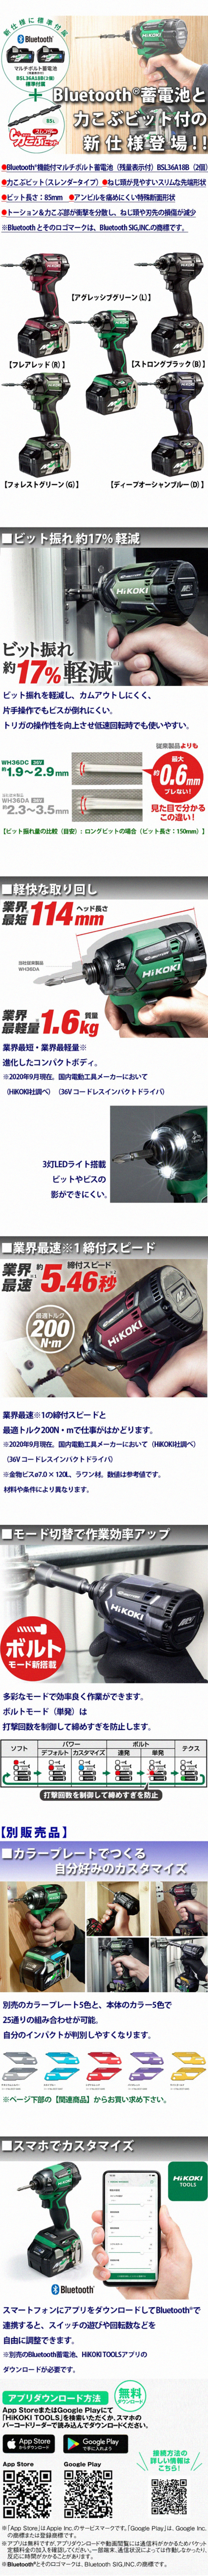 Hikoki 36Vマルチボルトインパクトドライバ WH36DC（bluetooth蓄電池仕様）